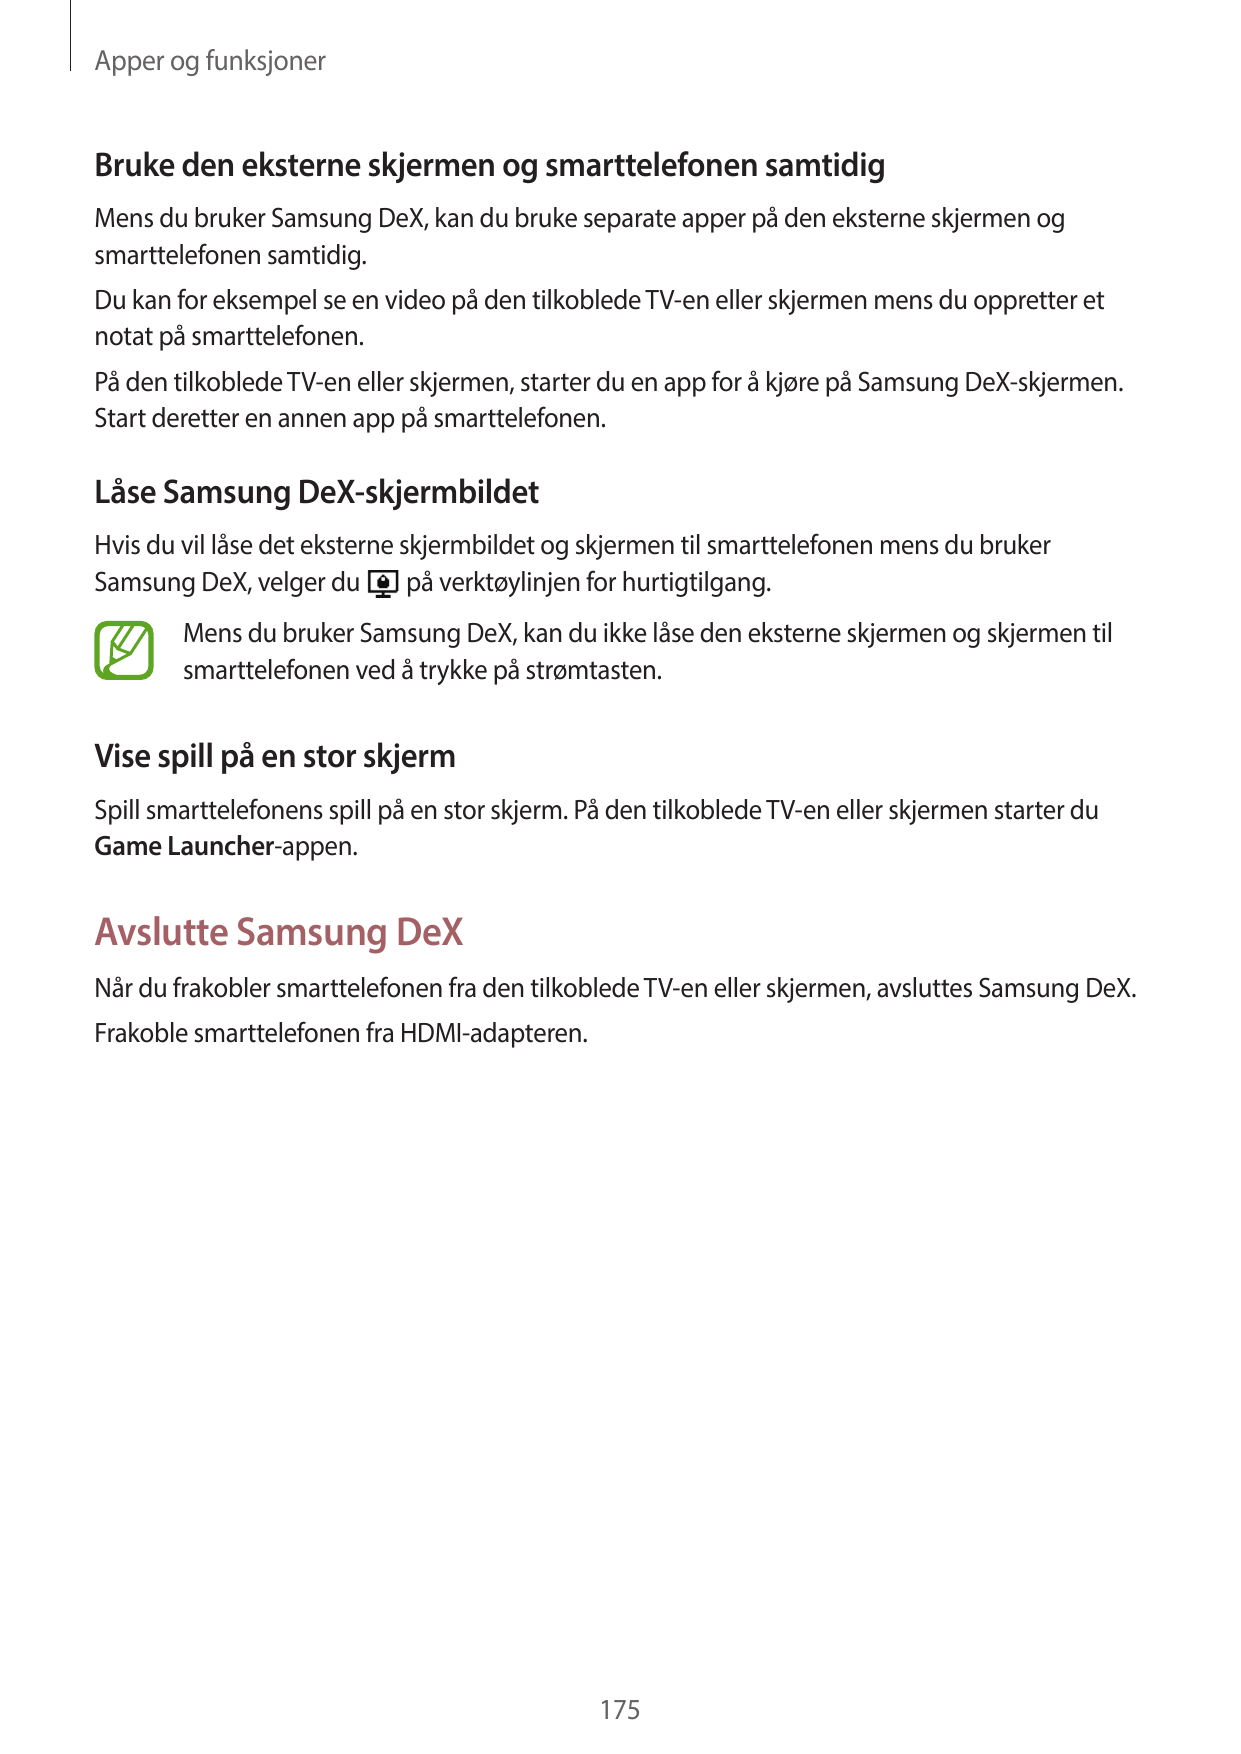 Apper og funksjonerBruke den eksterne skjermen og smarttelefonen samtidigMens du bruker Samsung DeX, kan du bruke separate apper